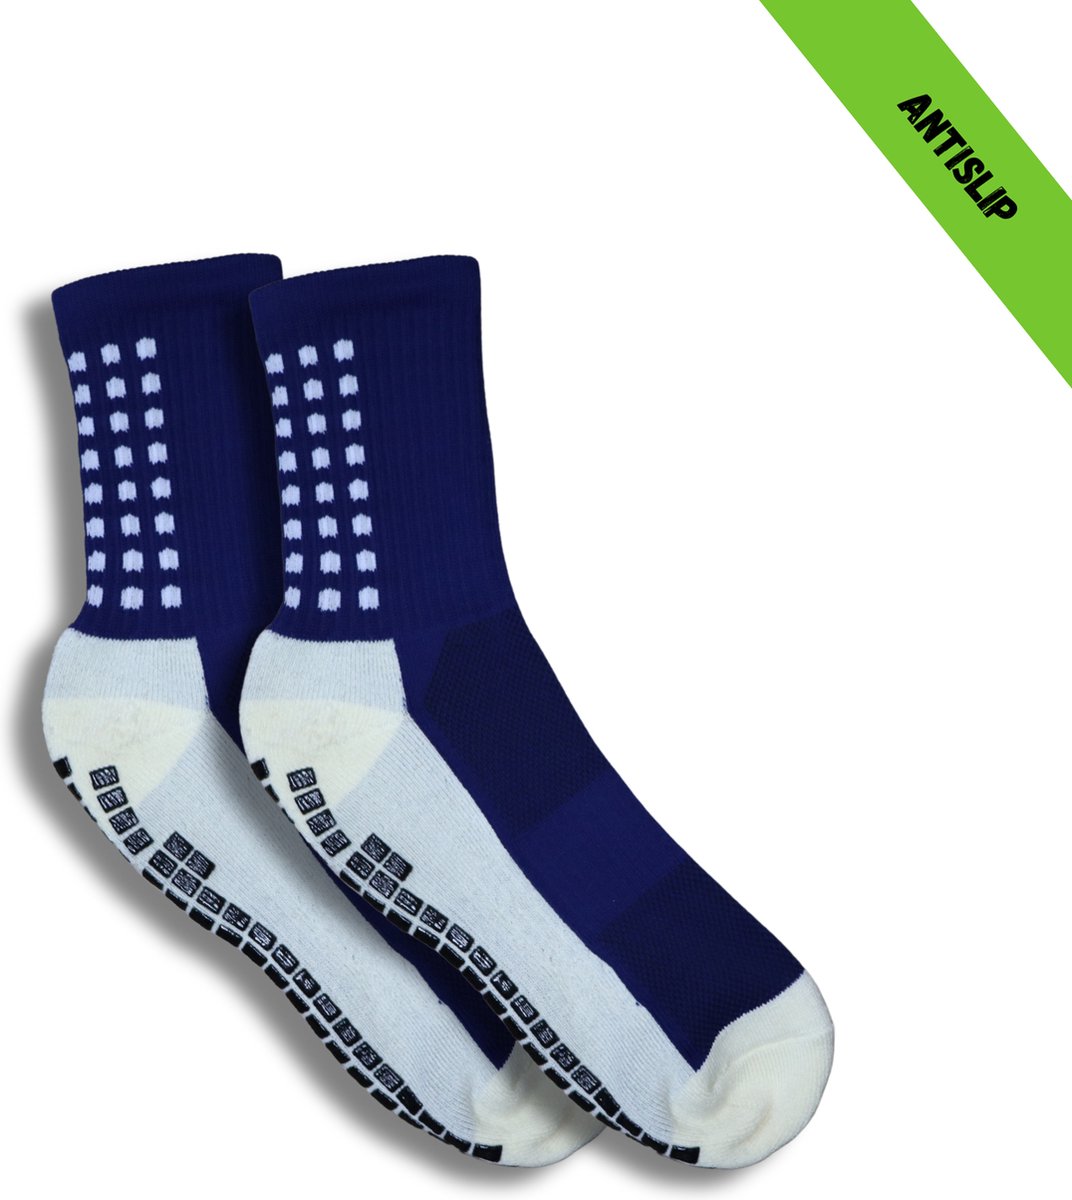 Gripsokken - Sportsokken - Gripsokken Voetbal - Gripsokken Voetbal Wit/Donkerblauw - Grip Socks - Pilates Sokken - Yoga Sokken - Anti Blaren - One Size - Compressie